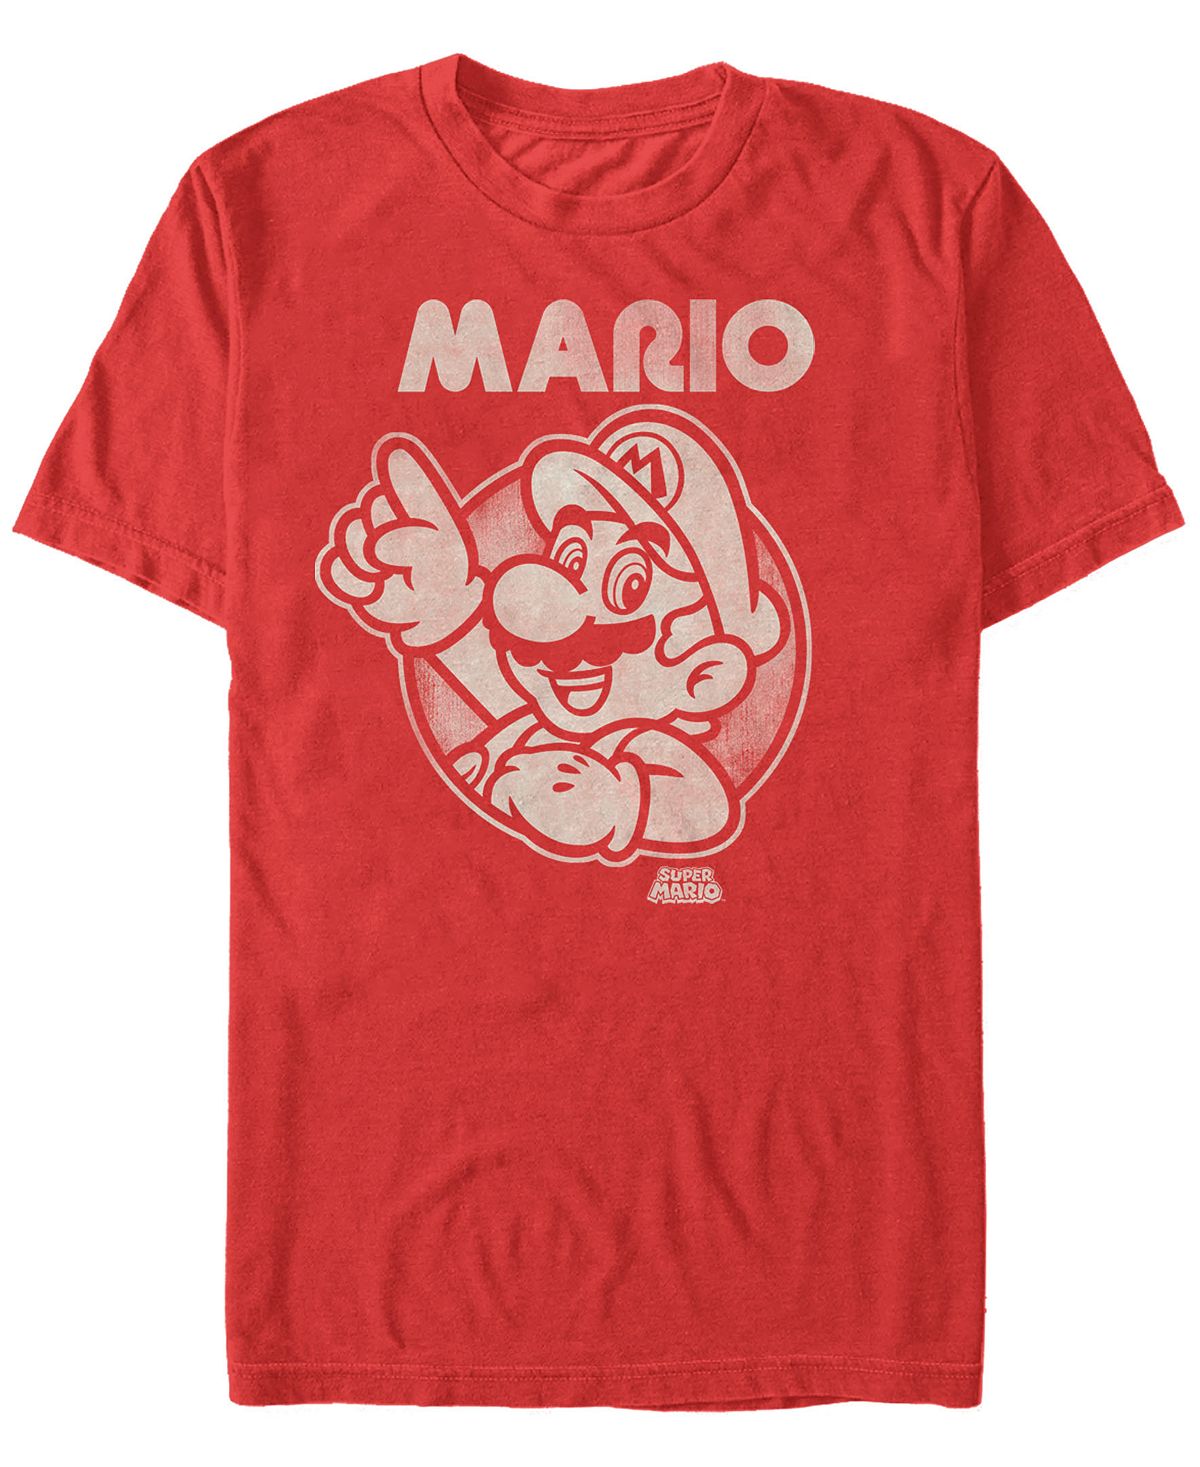 Мужская футболка с коротким рукавом super mario pointing nintendo Fifth Sun, красный